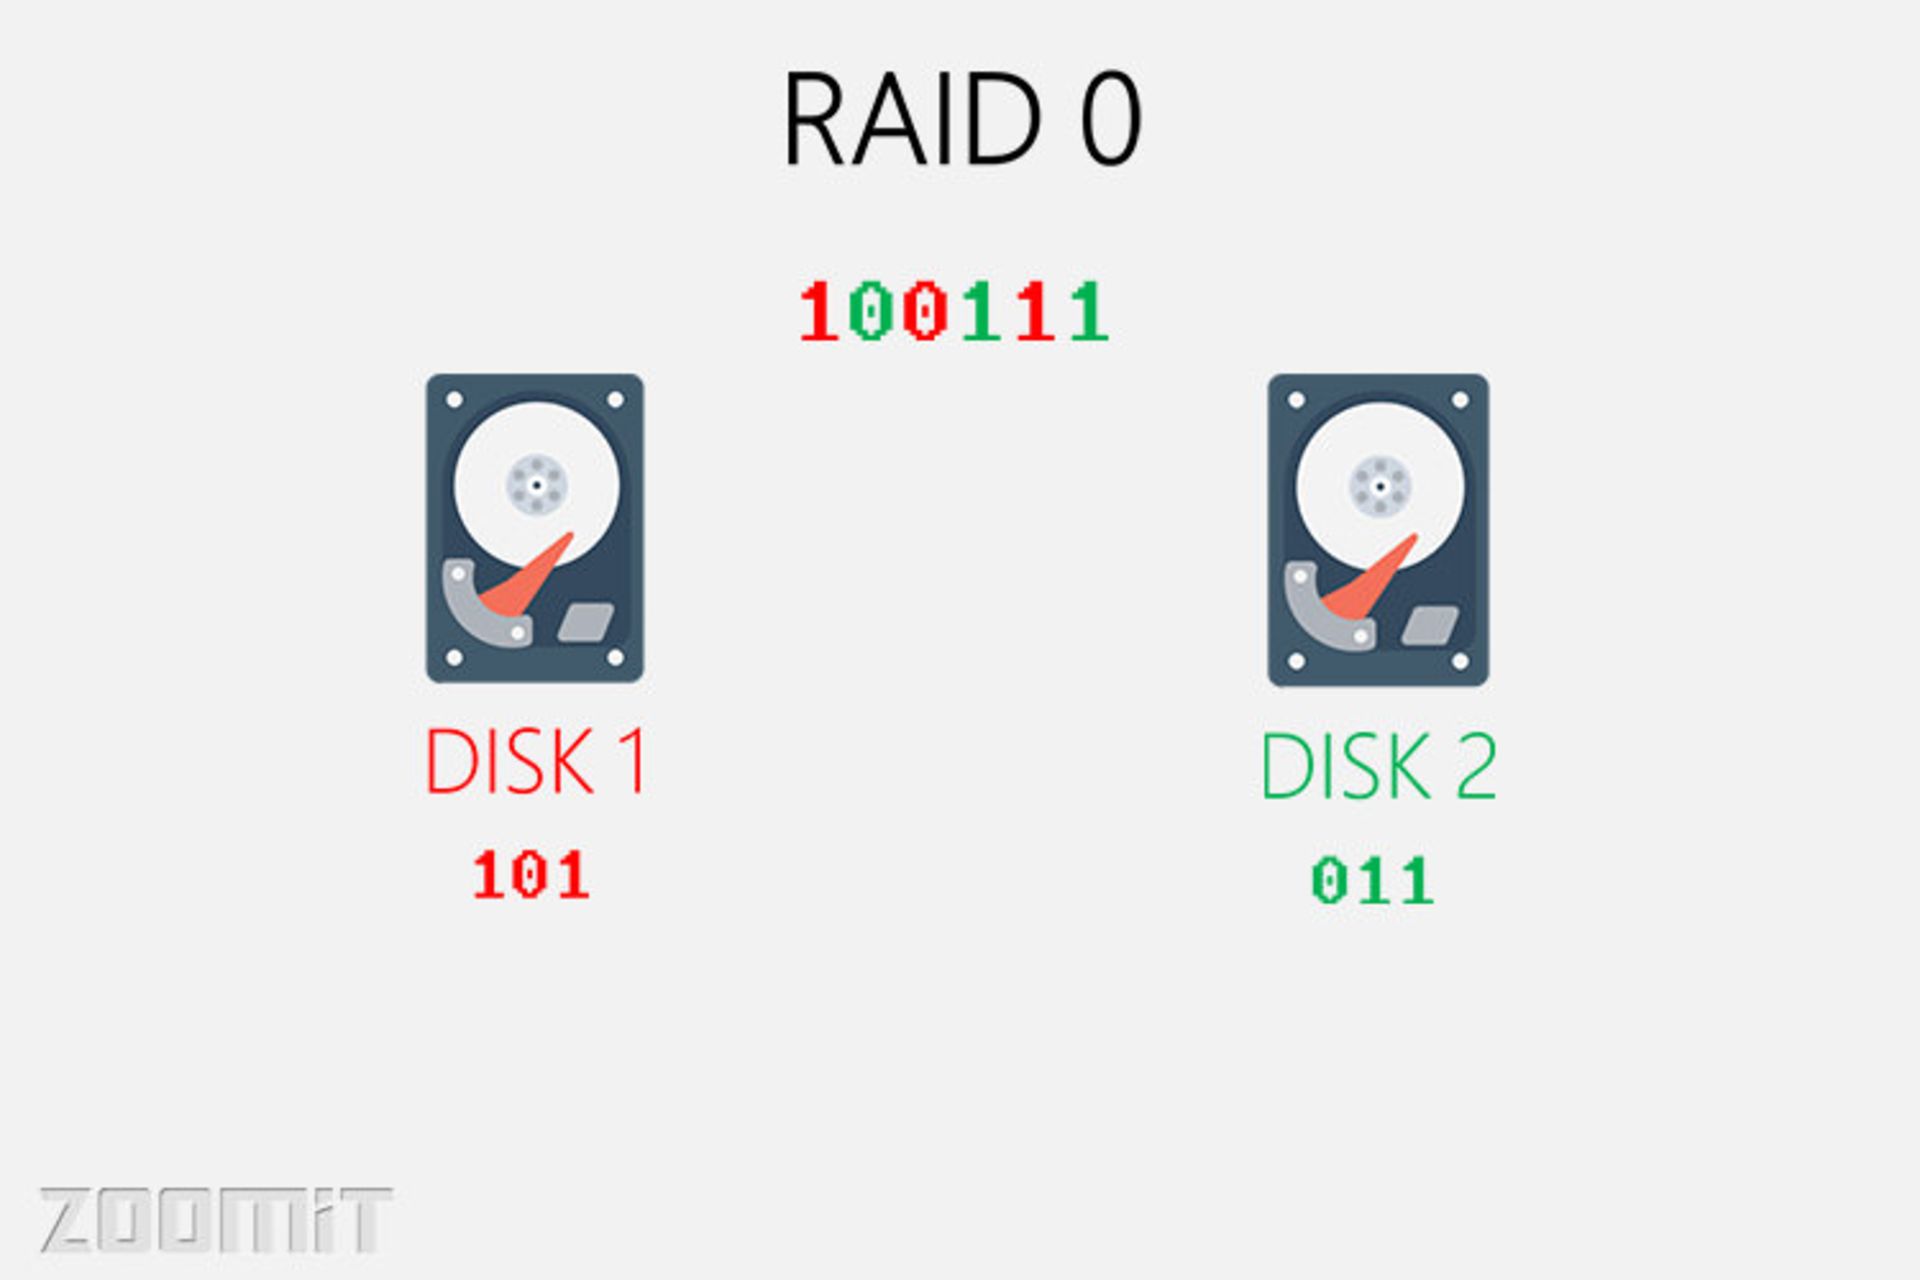 رید 0 / raid 0